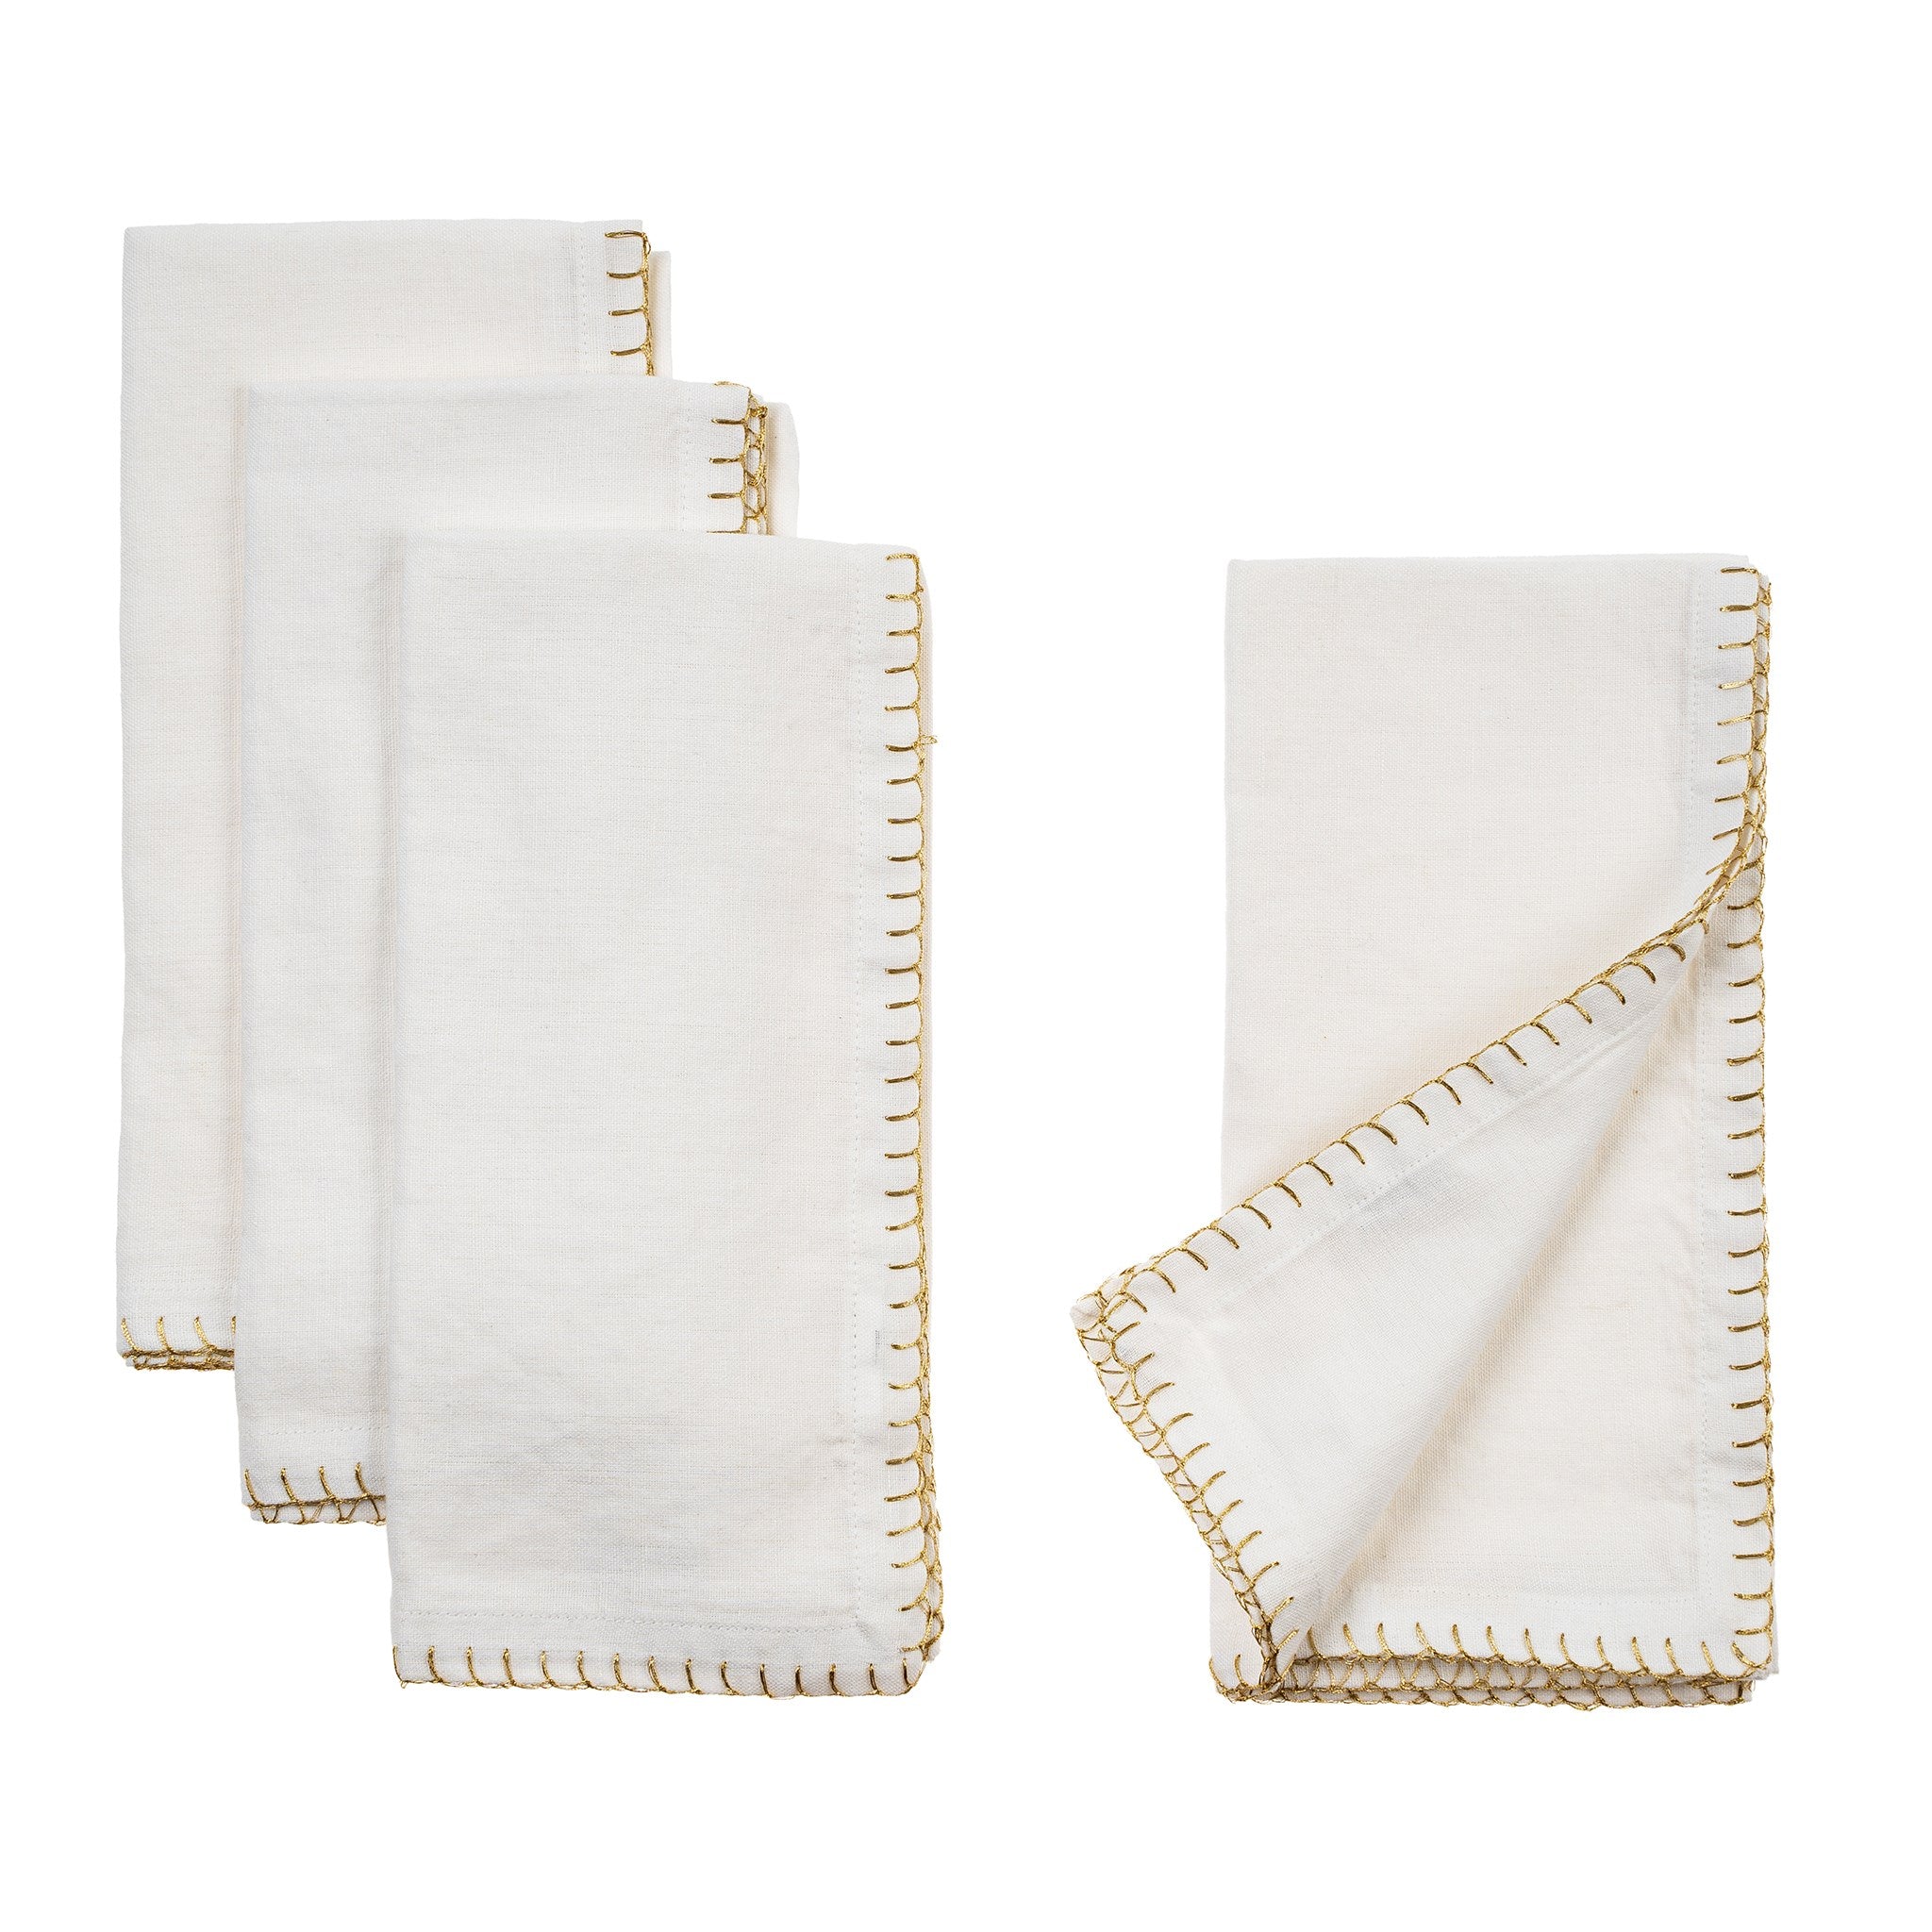 Gold Blanket Stitch Napkin, White